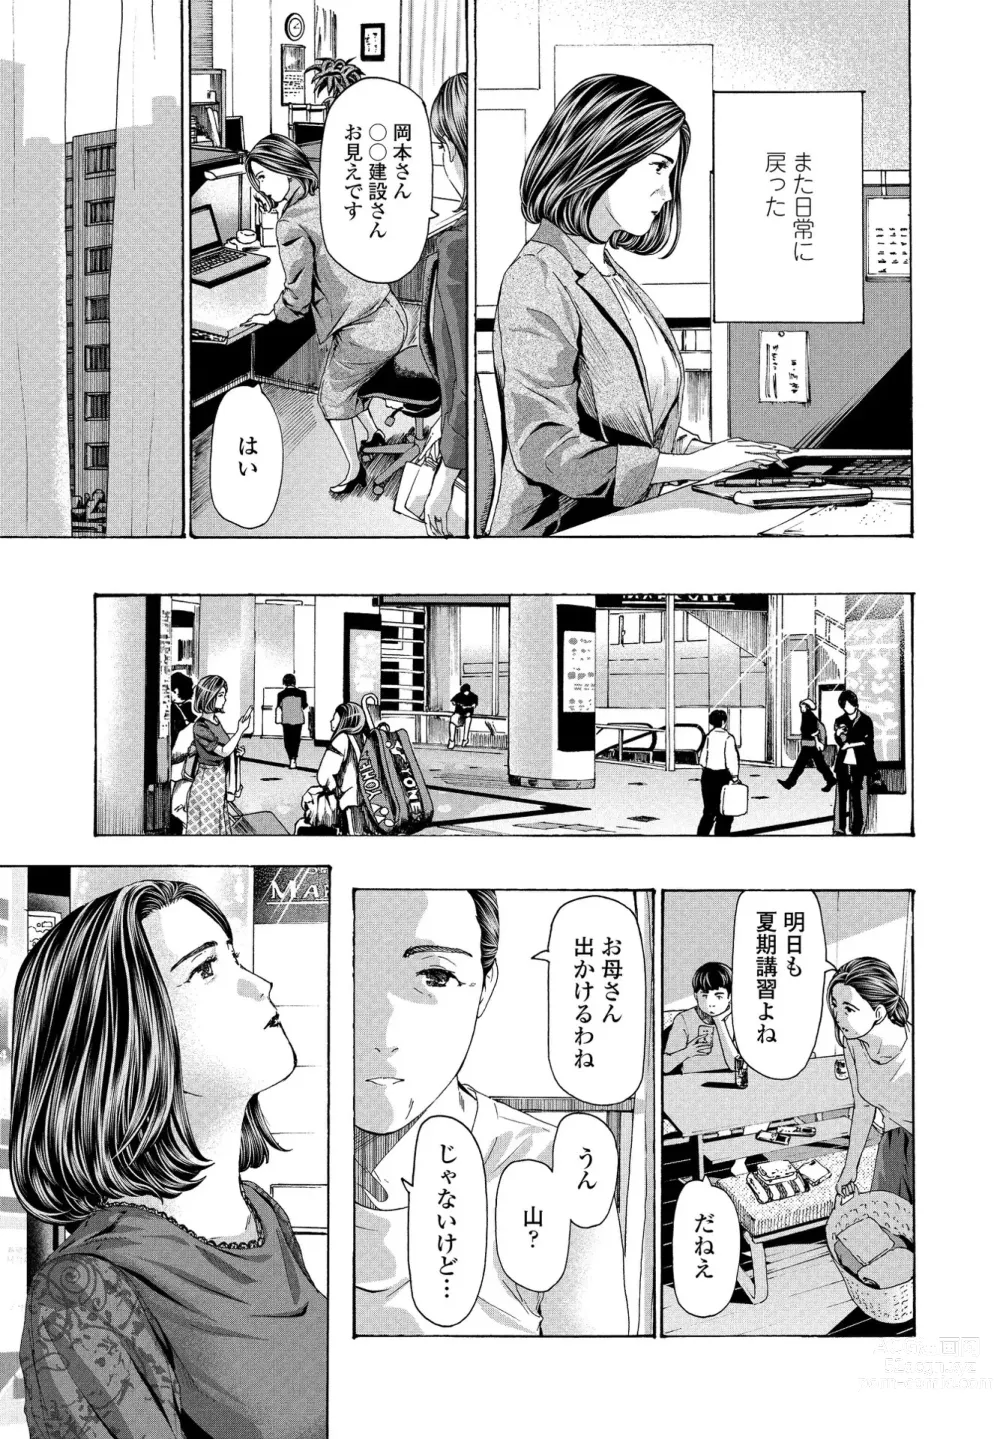 Page 53 of manga Hinangoya nite